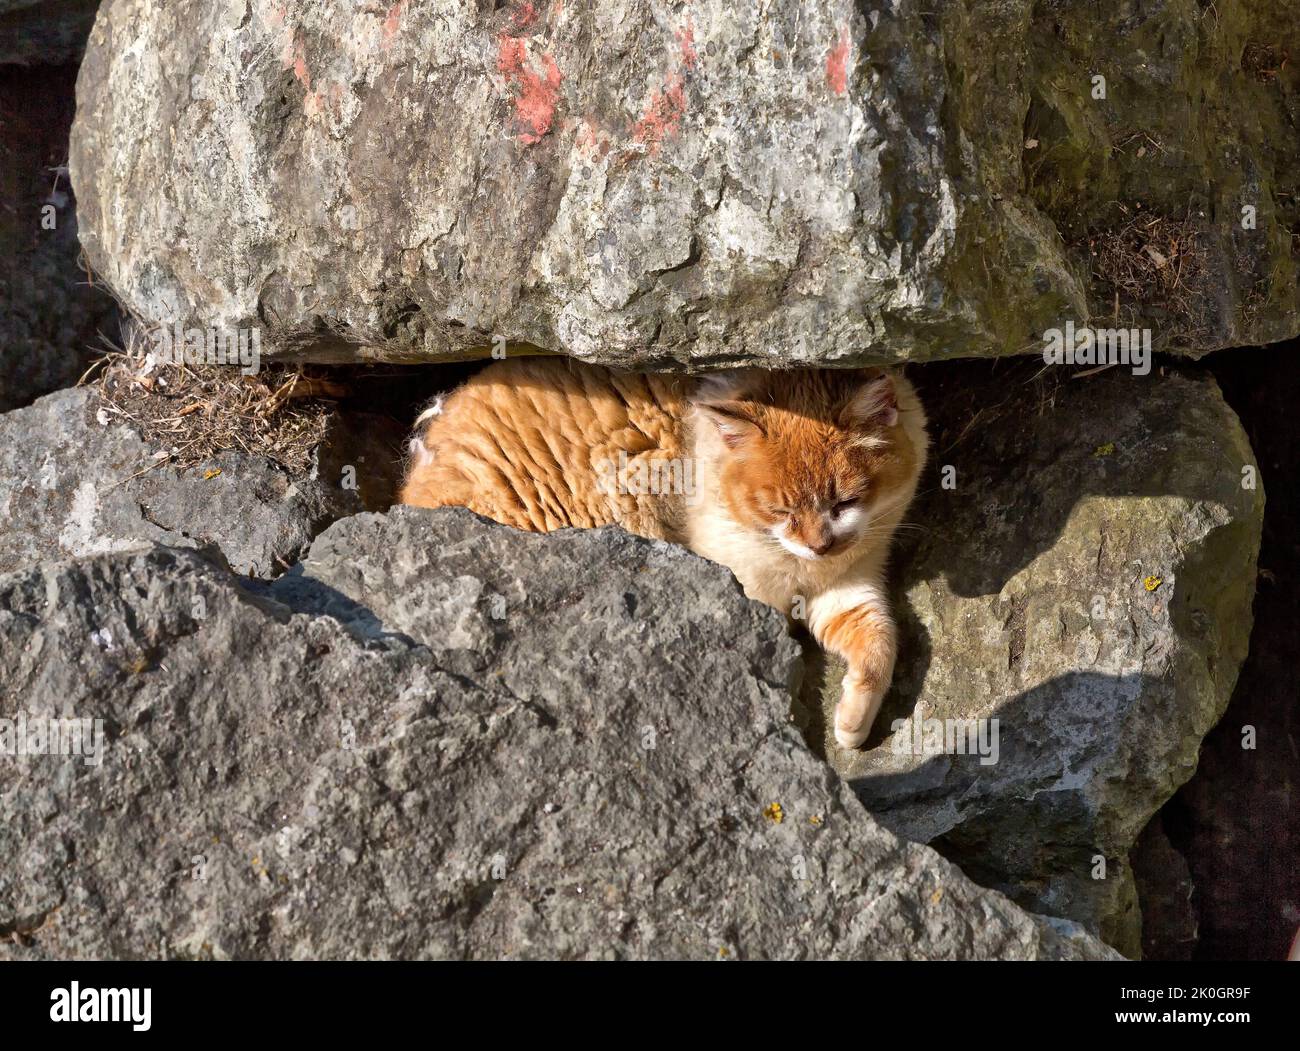 Abbandonato, senza casa, trascurato gatto casa 'Felis catus' riposando lungo le rocce di rinforzo al porto, California West Coast. Foto Stock